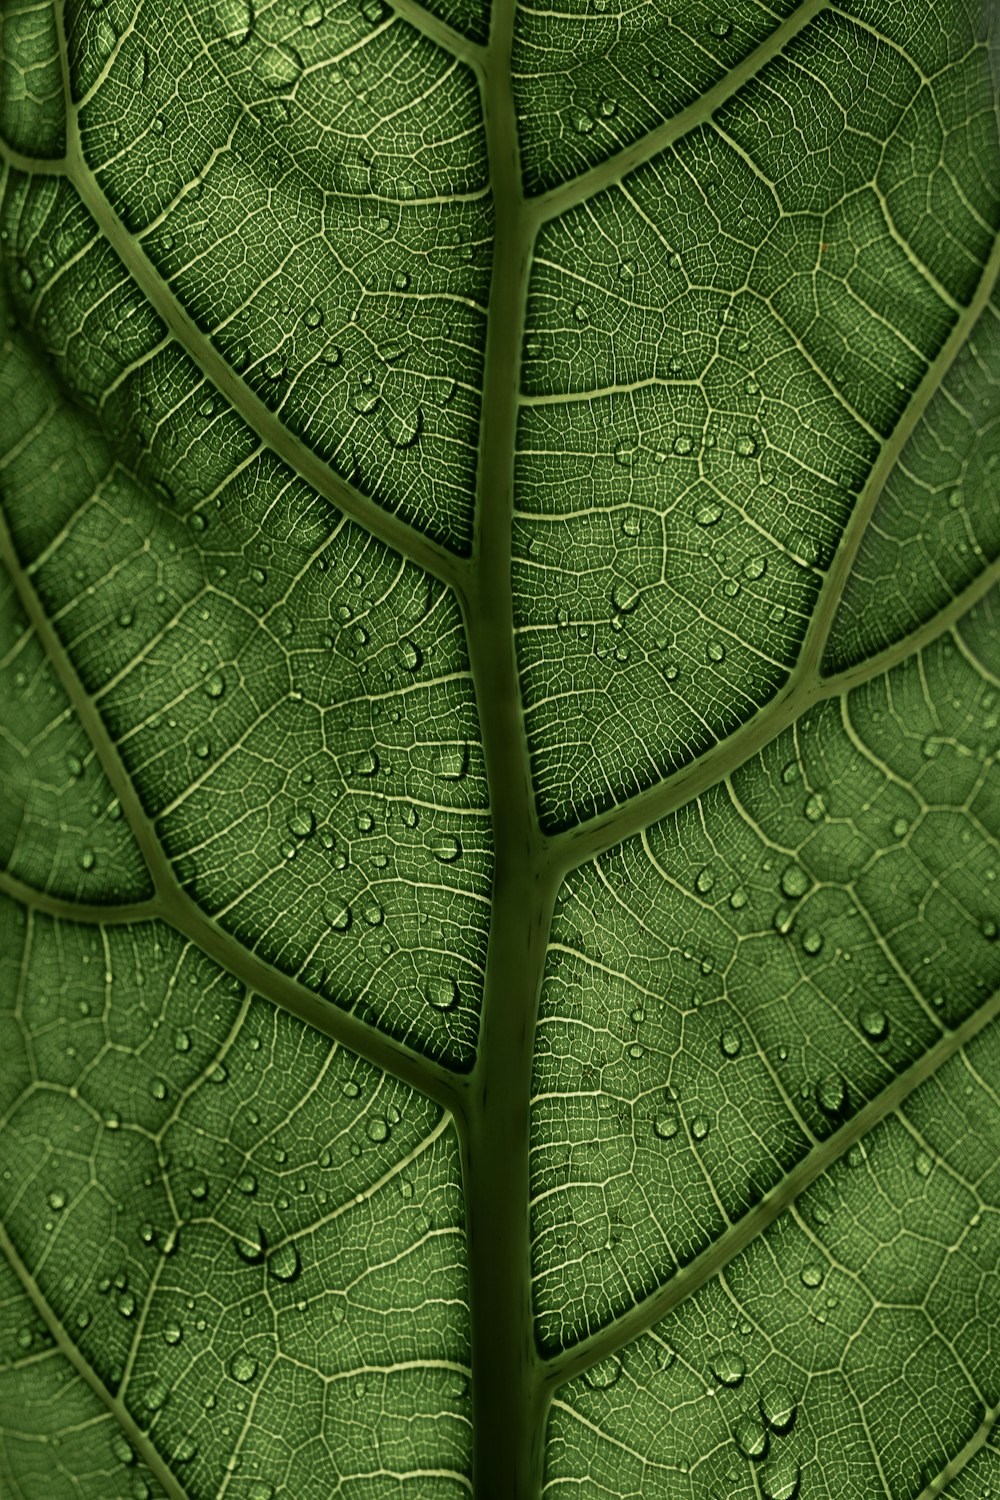 eine Nahaufnahme eines grünen Blattes mit Wassertropfen darauf